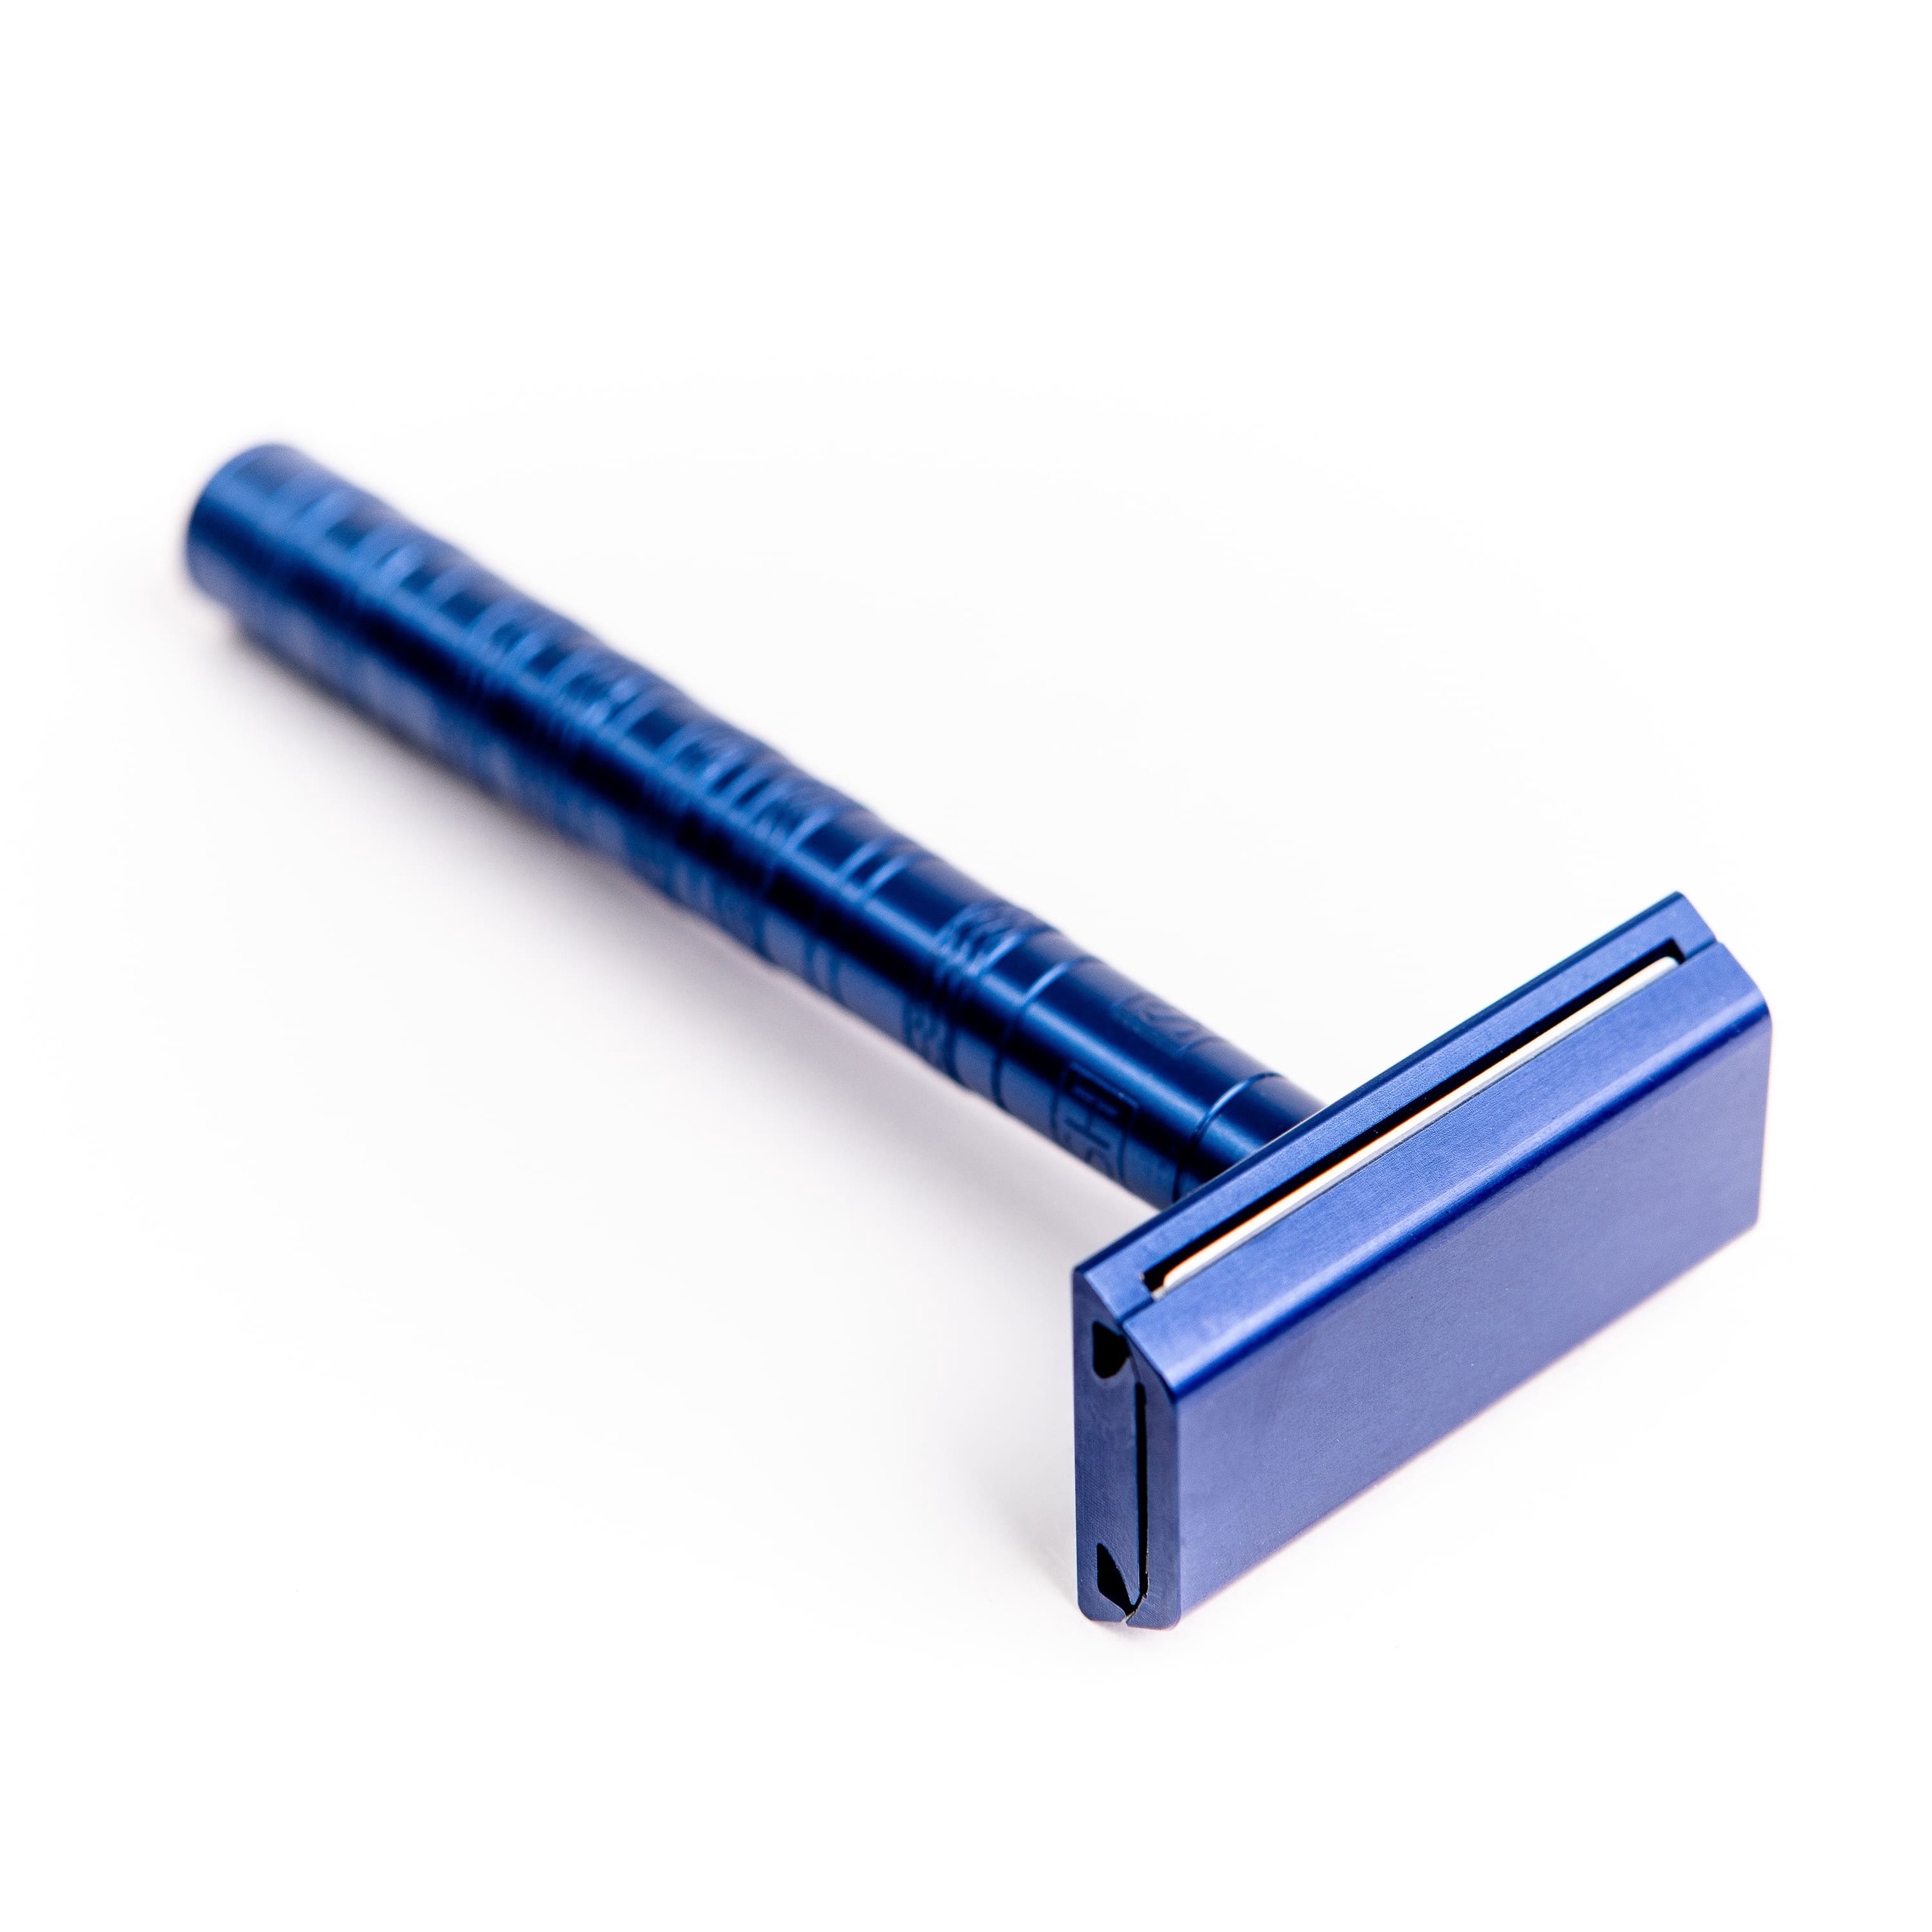 Т-образная бритва Henson Shaving AL13 синий, Mild умное вязание новые возможности трех кокеток конструктор бесшовных плечевых изделий из любой пряжи и на любой размер с автографом